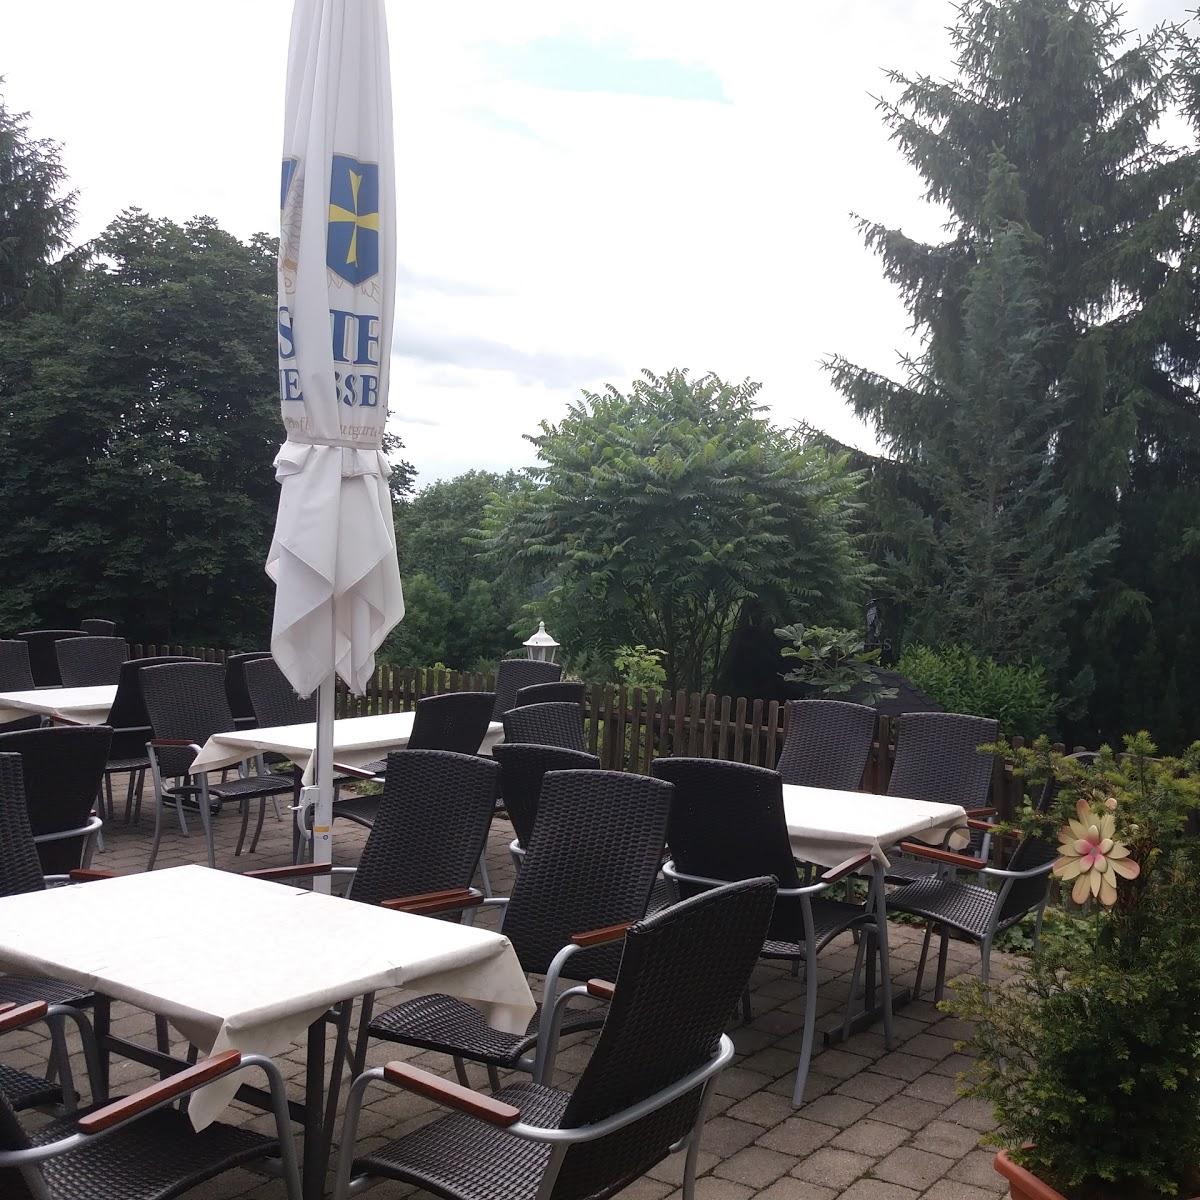 Restaurant "Gasthaus Berghütte" in  Meßstetten